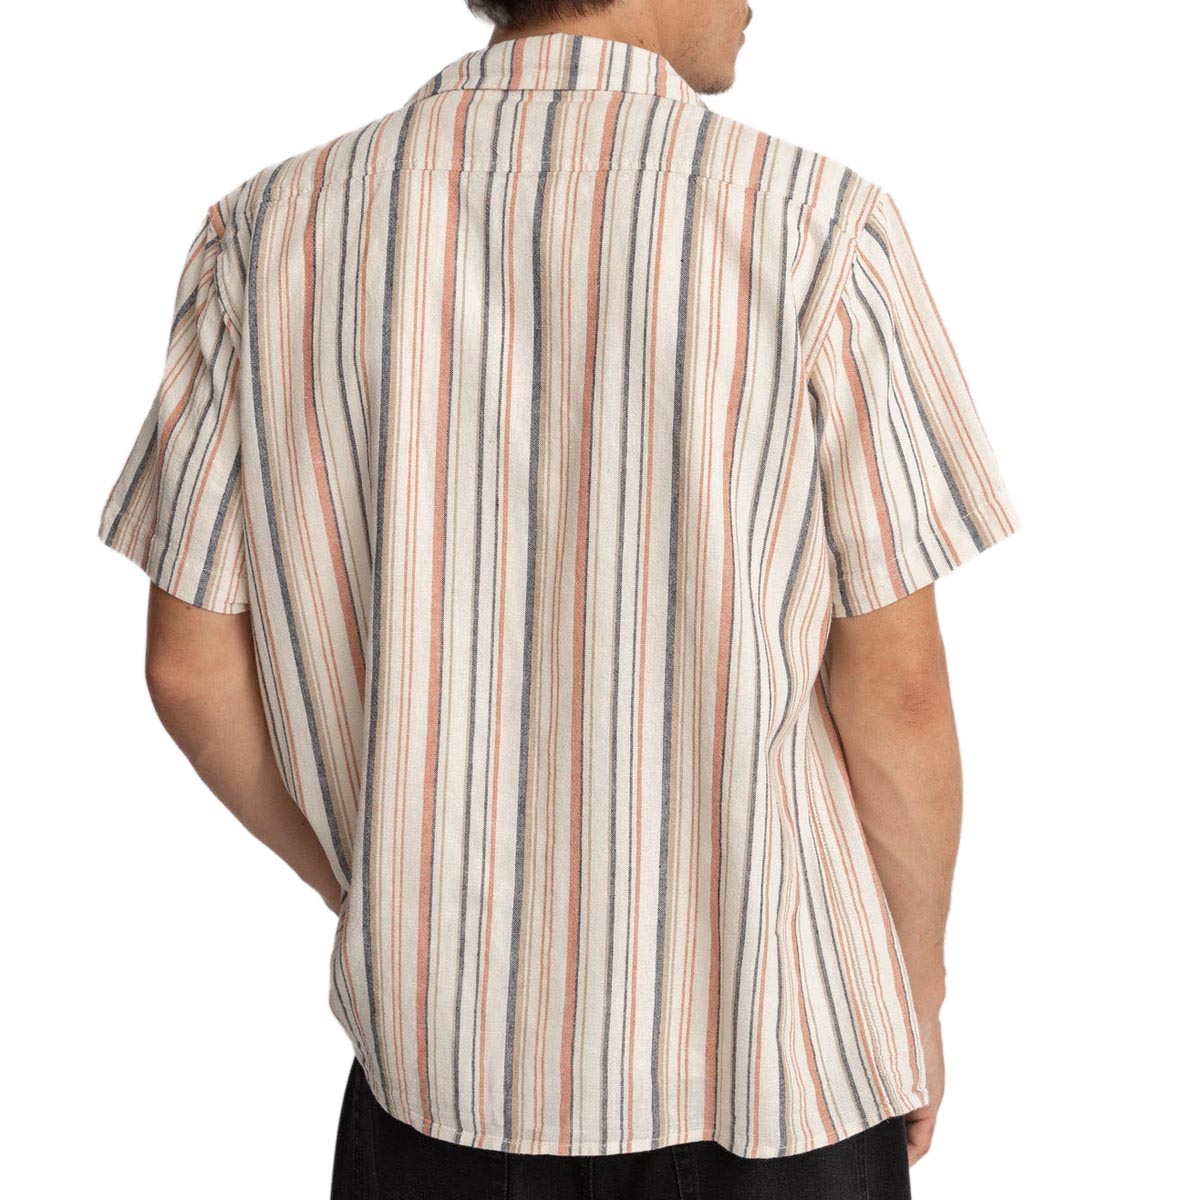 Rhythm Vacation Stripes Shirt - Natural image 2